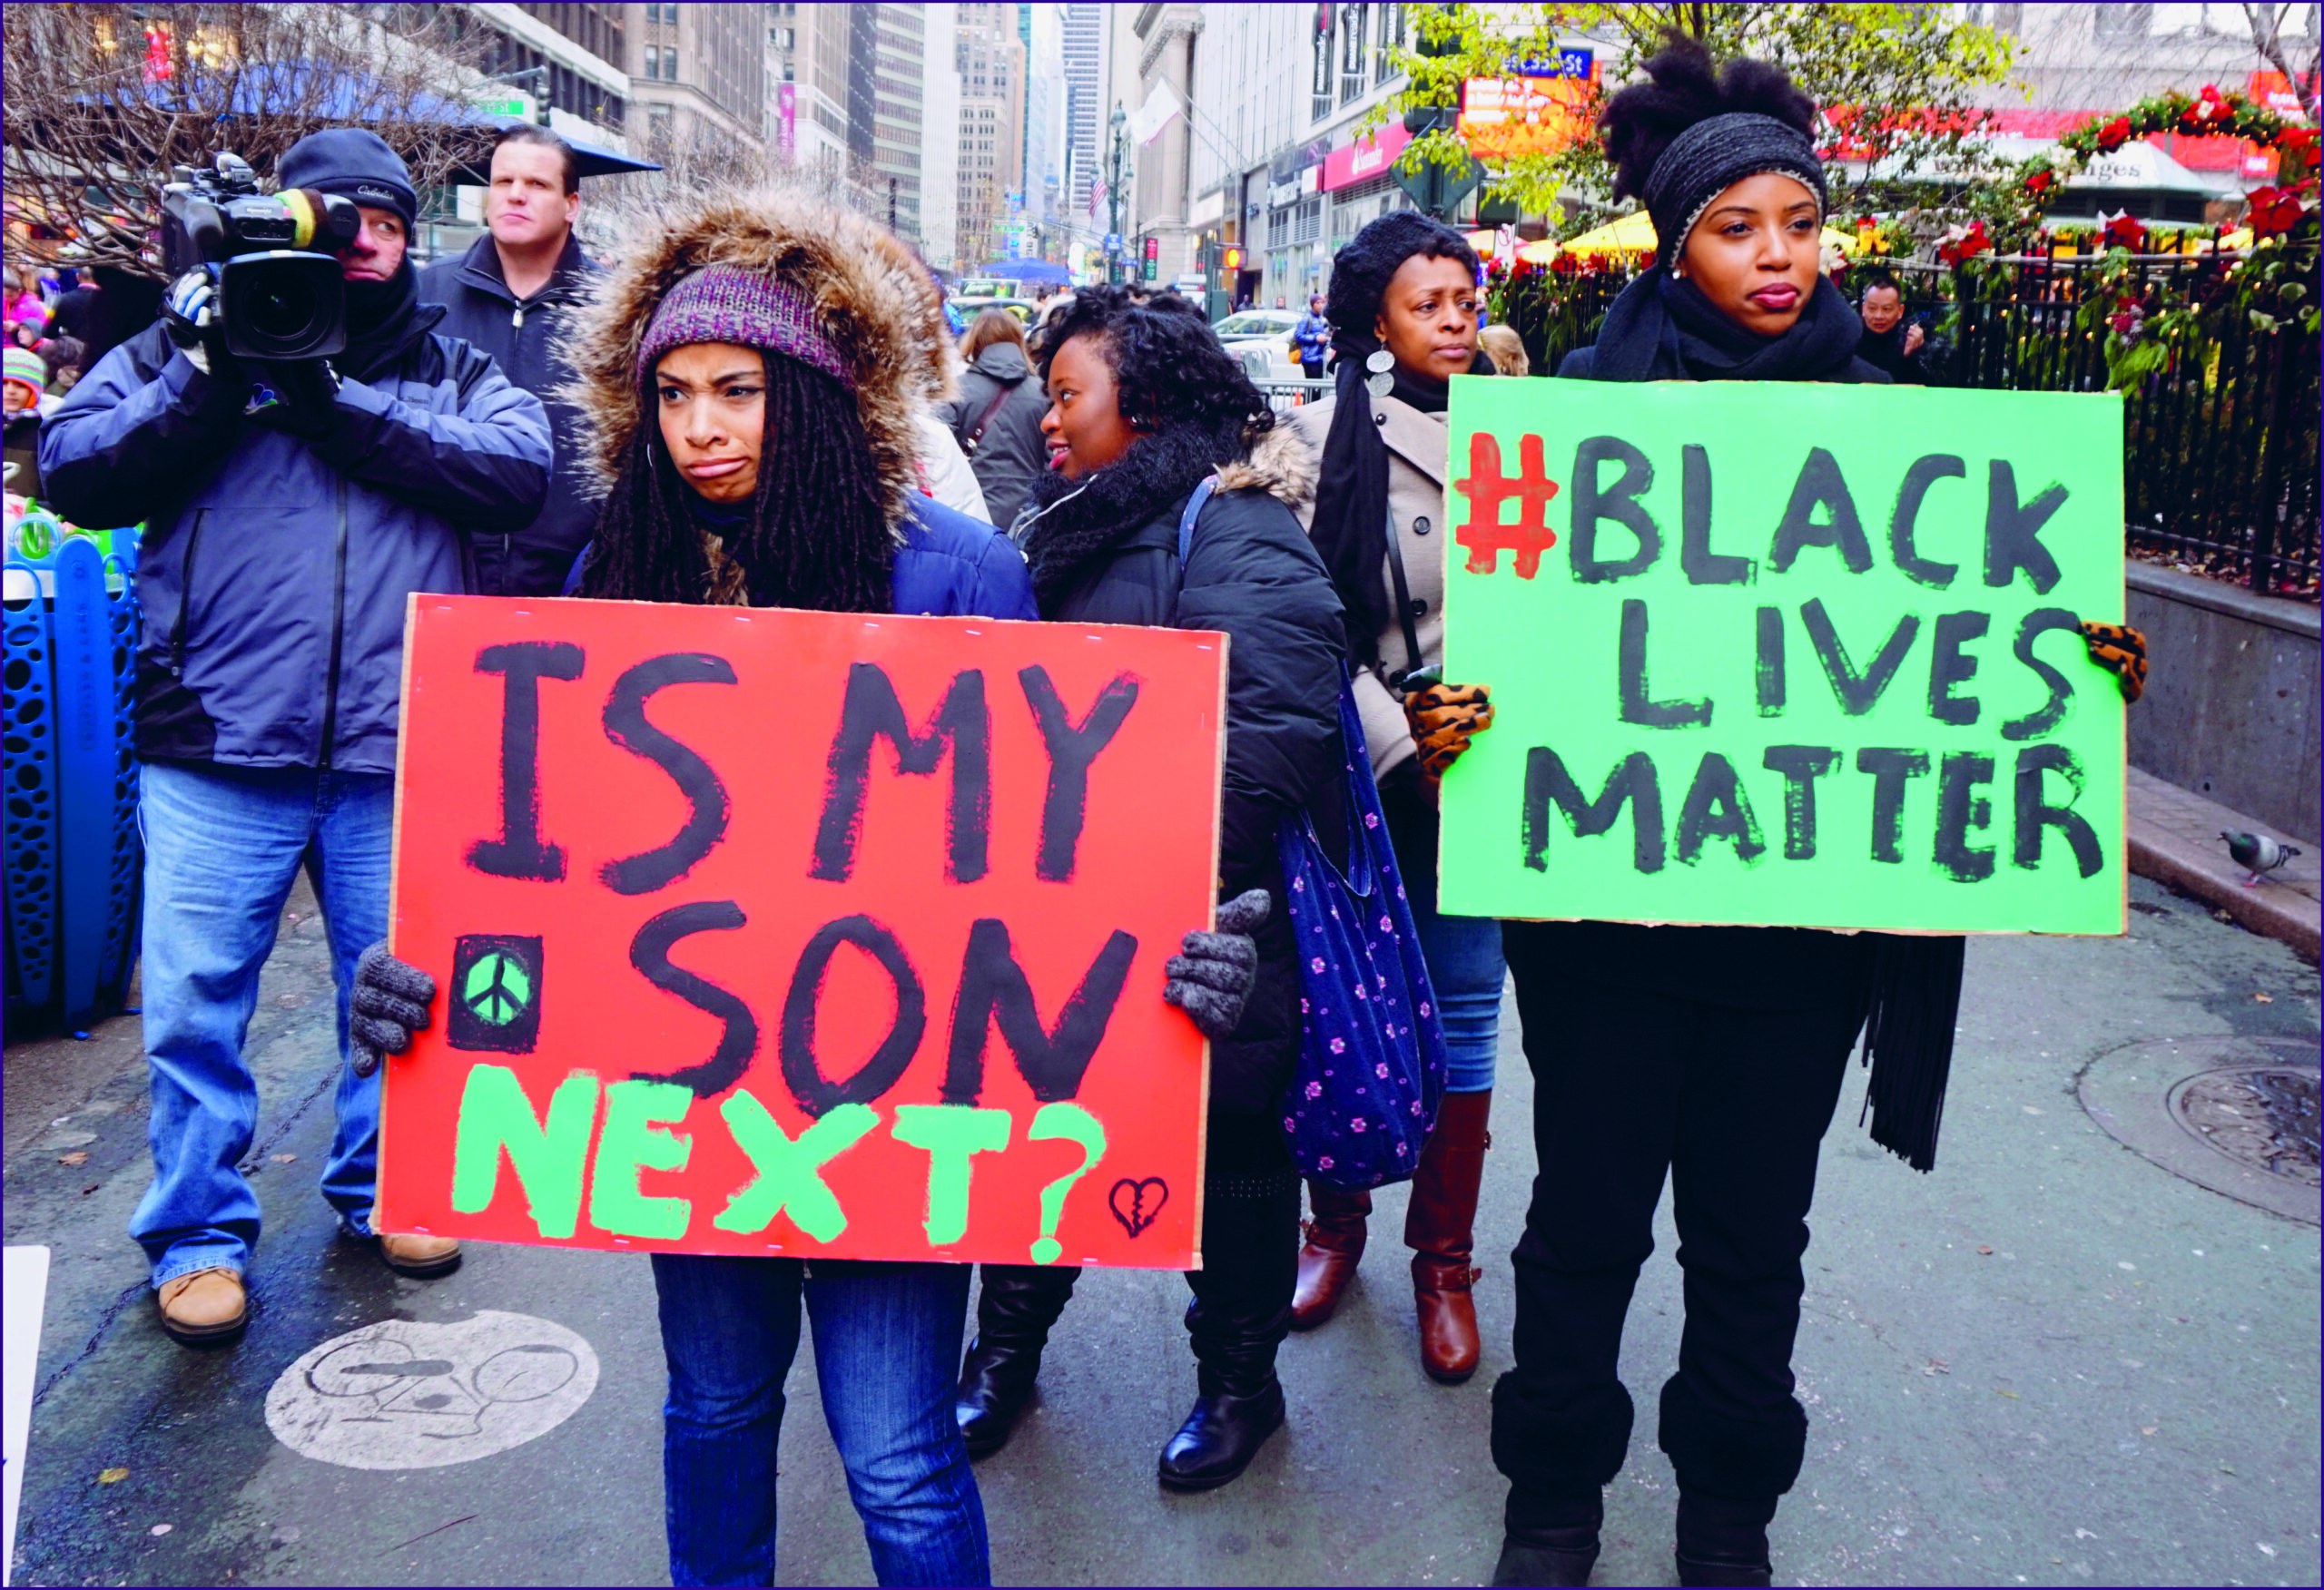 schwarze menschen bei einem protest auf der straße. auf schildern steht black lives matter und is my son next?